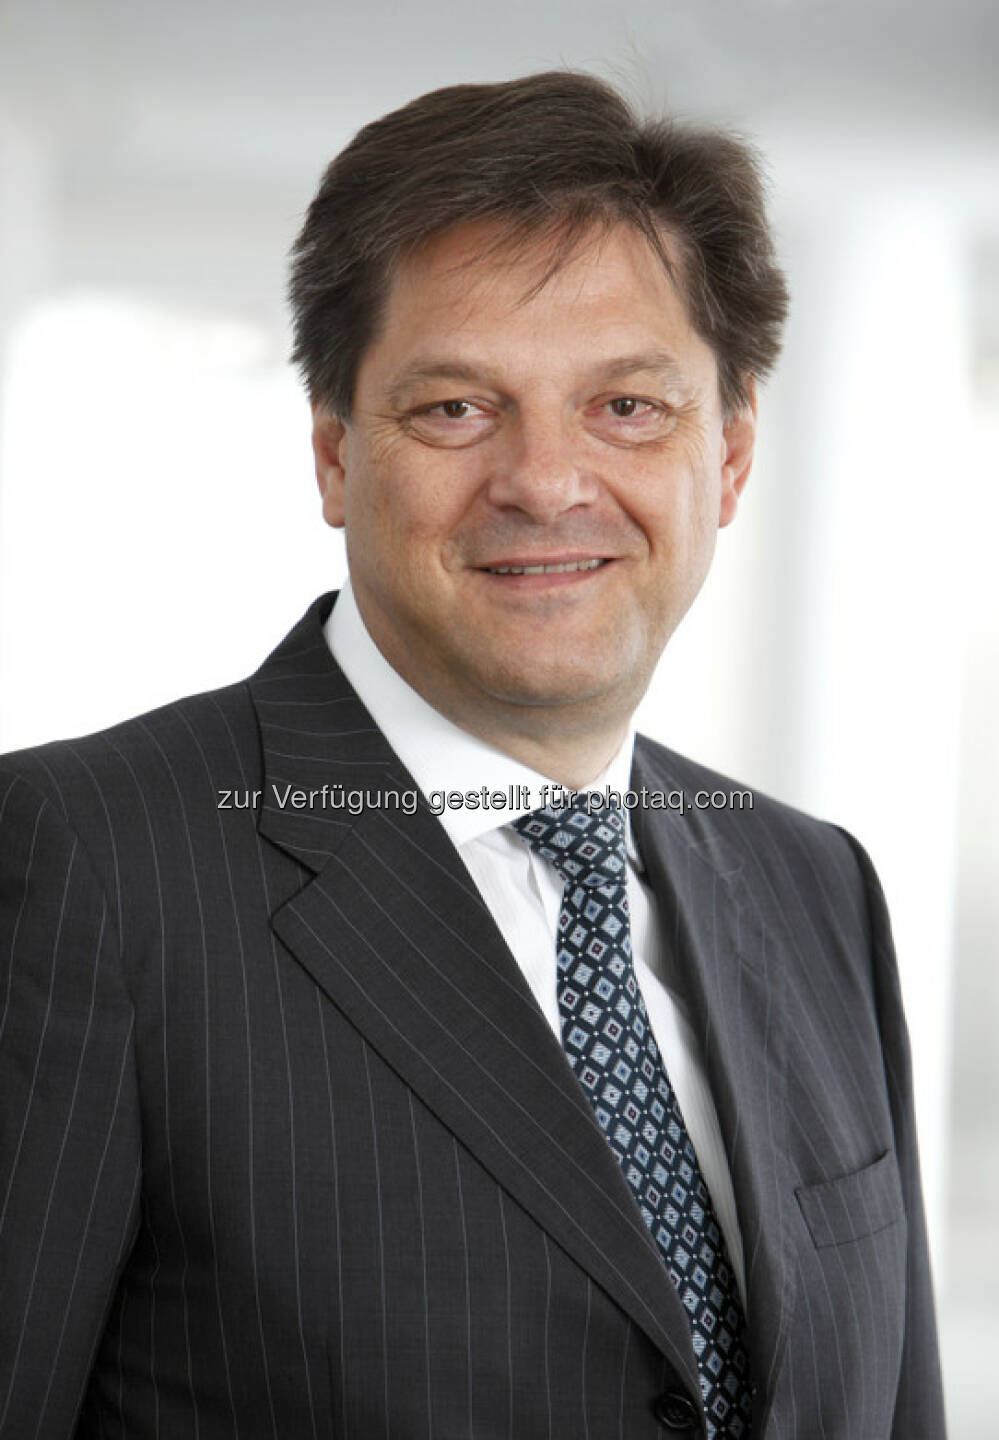 Richard Ehrenfeldner, Vorstand Semperit (30. März) - finanzmarktfoto.at wünscht alles Gute!